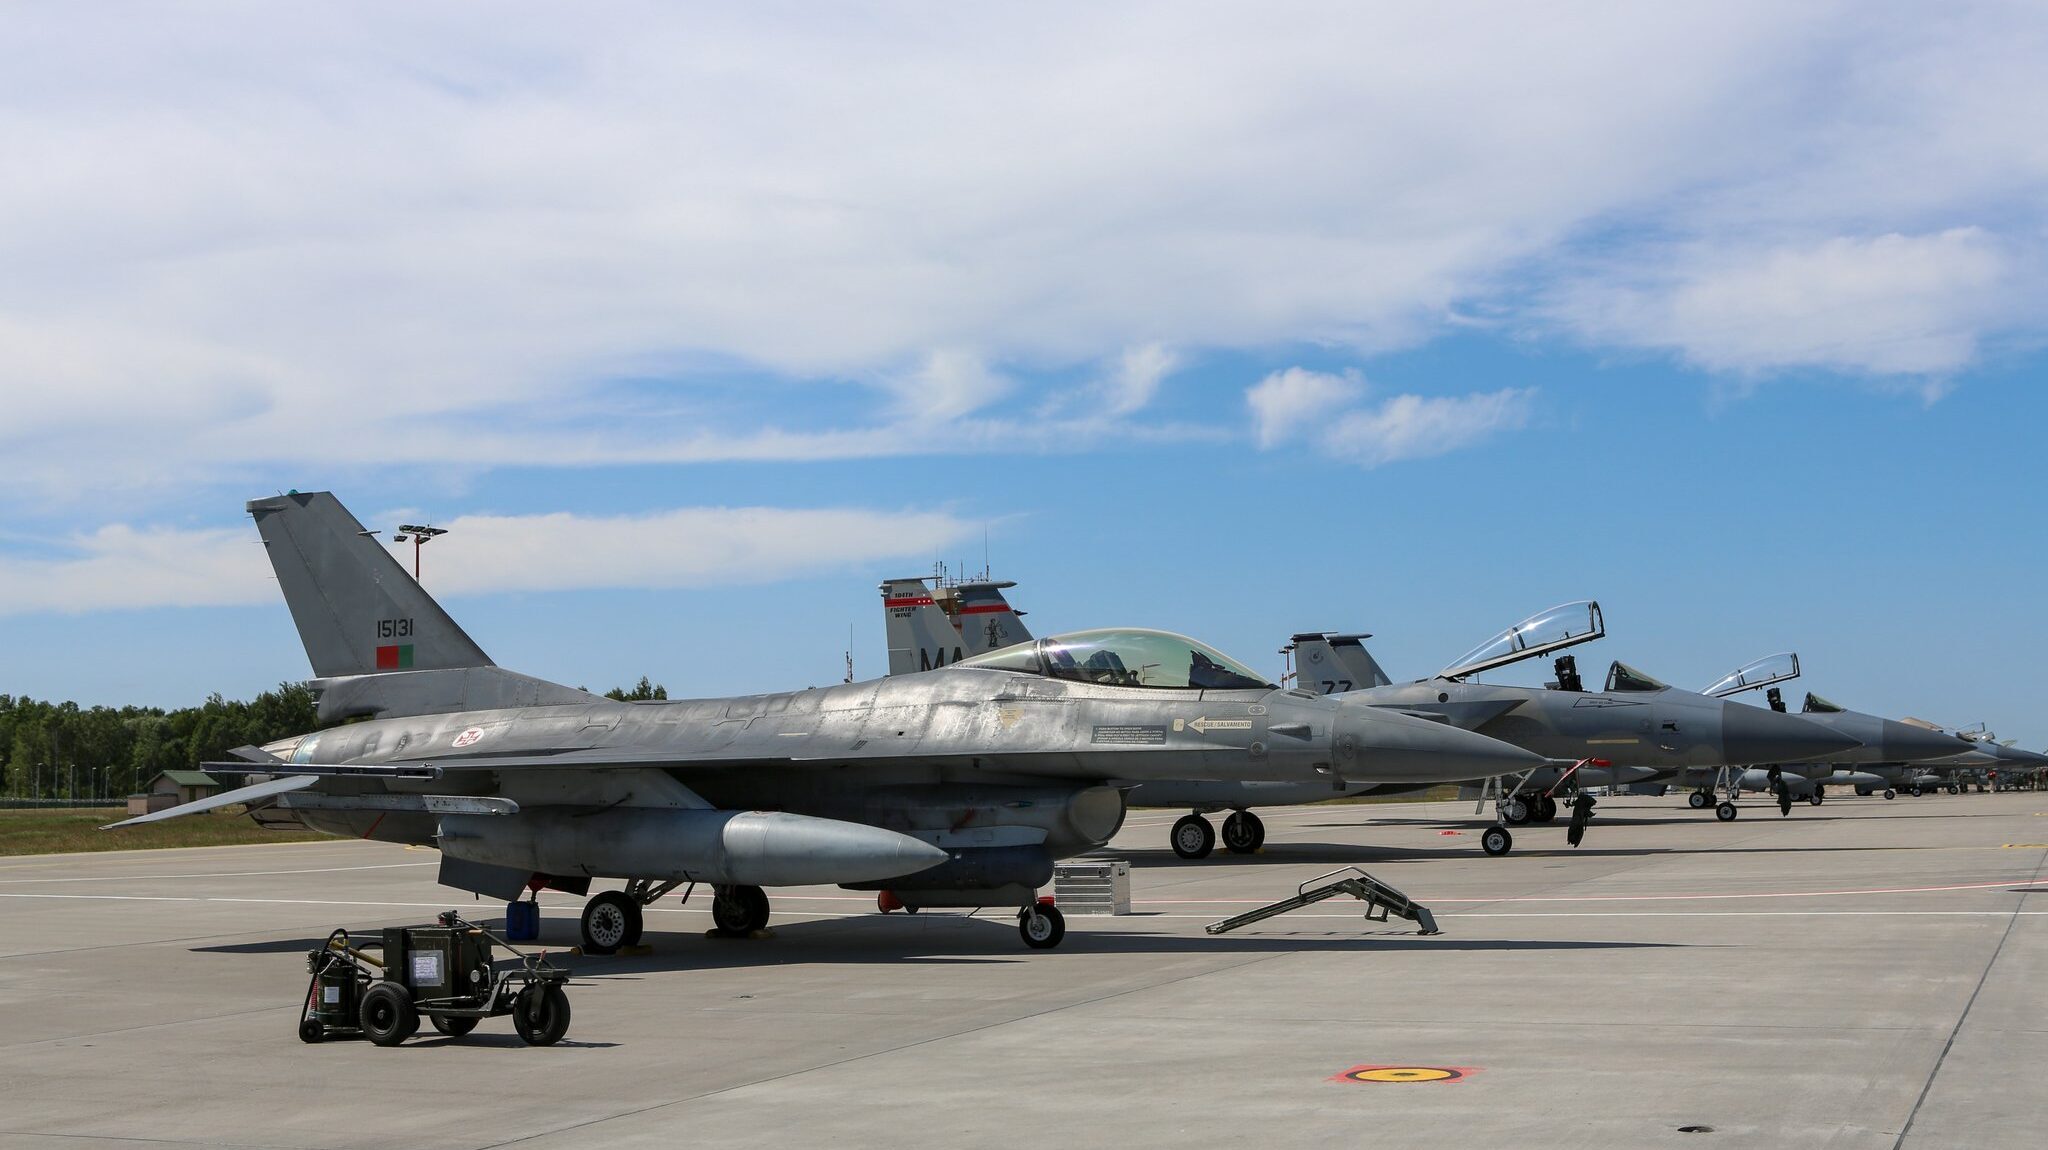 A Força Aérea Portuguesa delineou uma nova 'visão' para substituir os jatos F-16 (foto) pelos F-35 dos EUA, mas o processo de aquisição não está em andamento.  (Força Aérea Portuguesa em X)